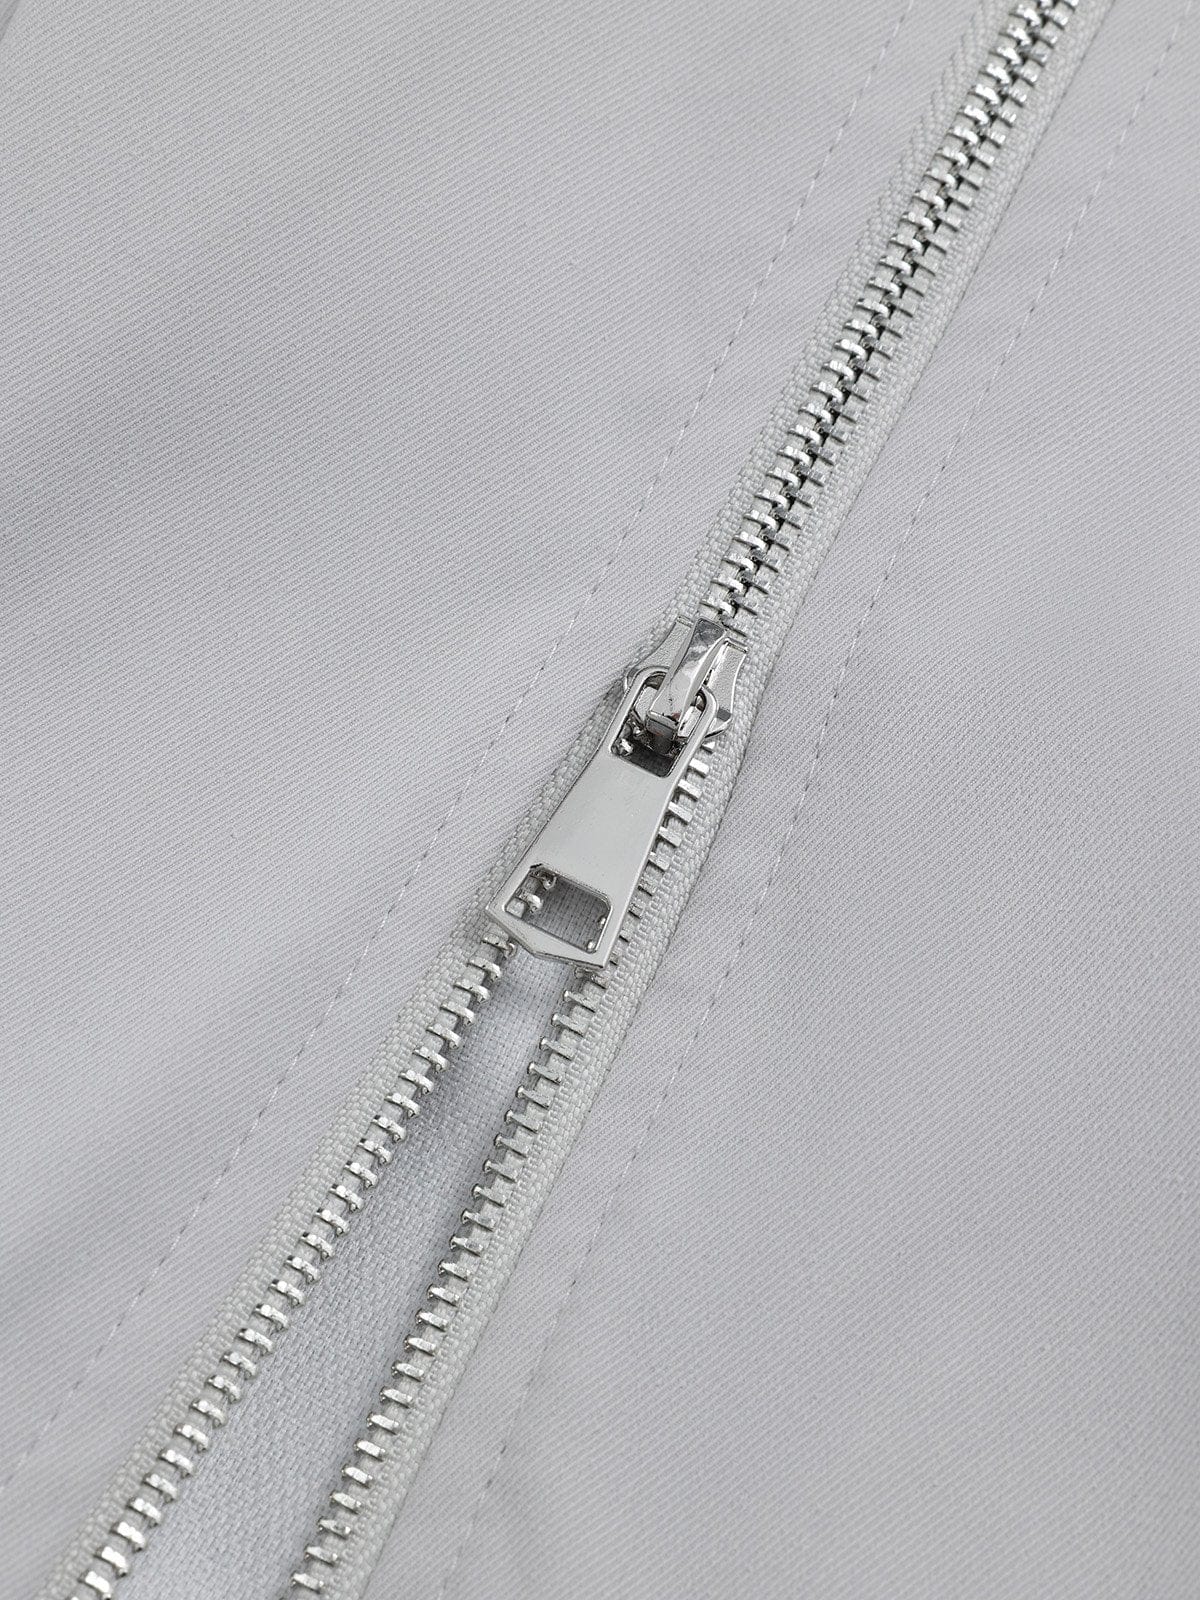 NEV Multi-Pocket Zippered Pants